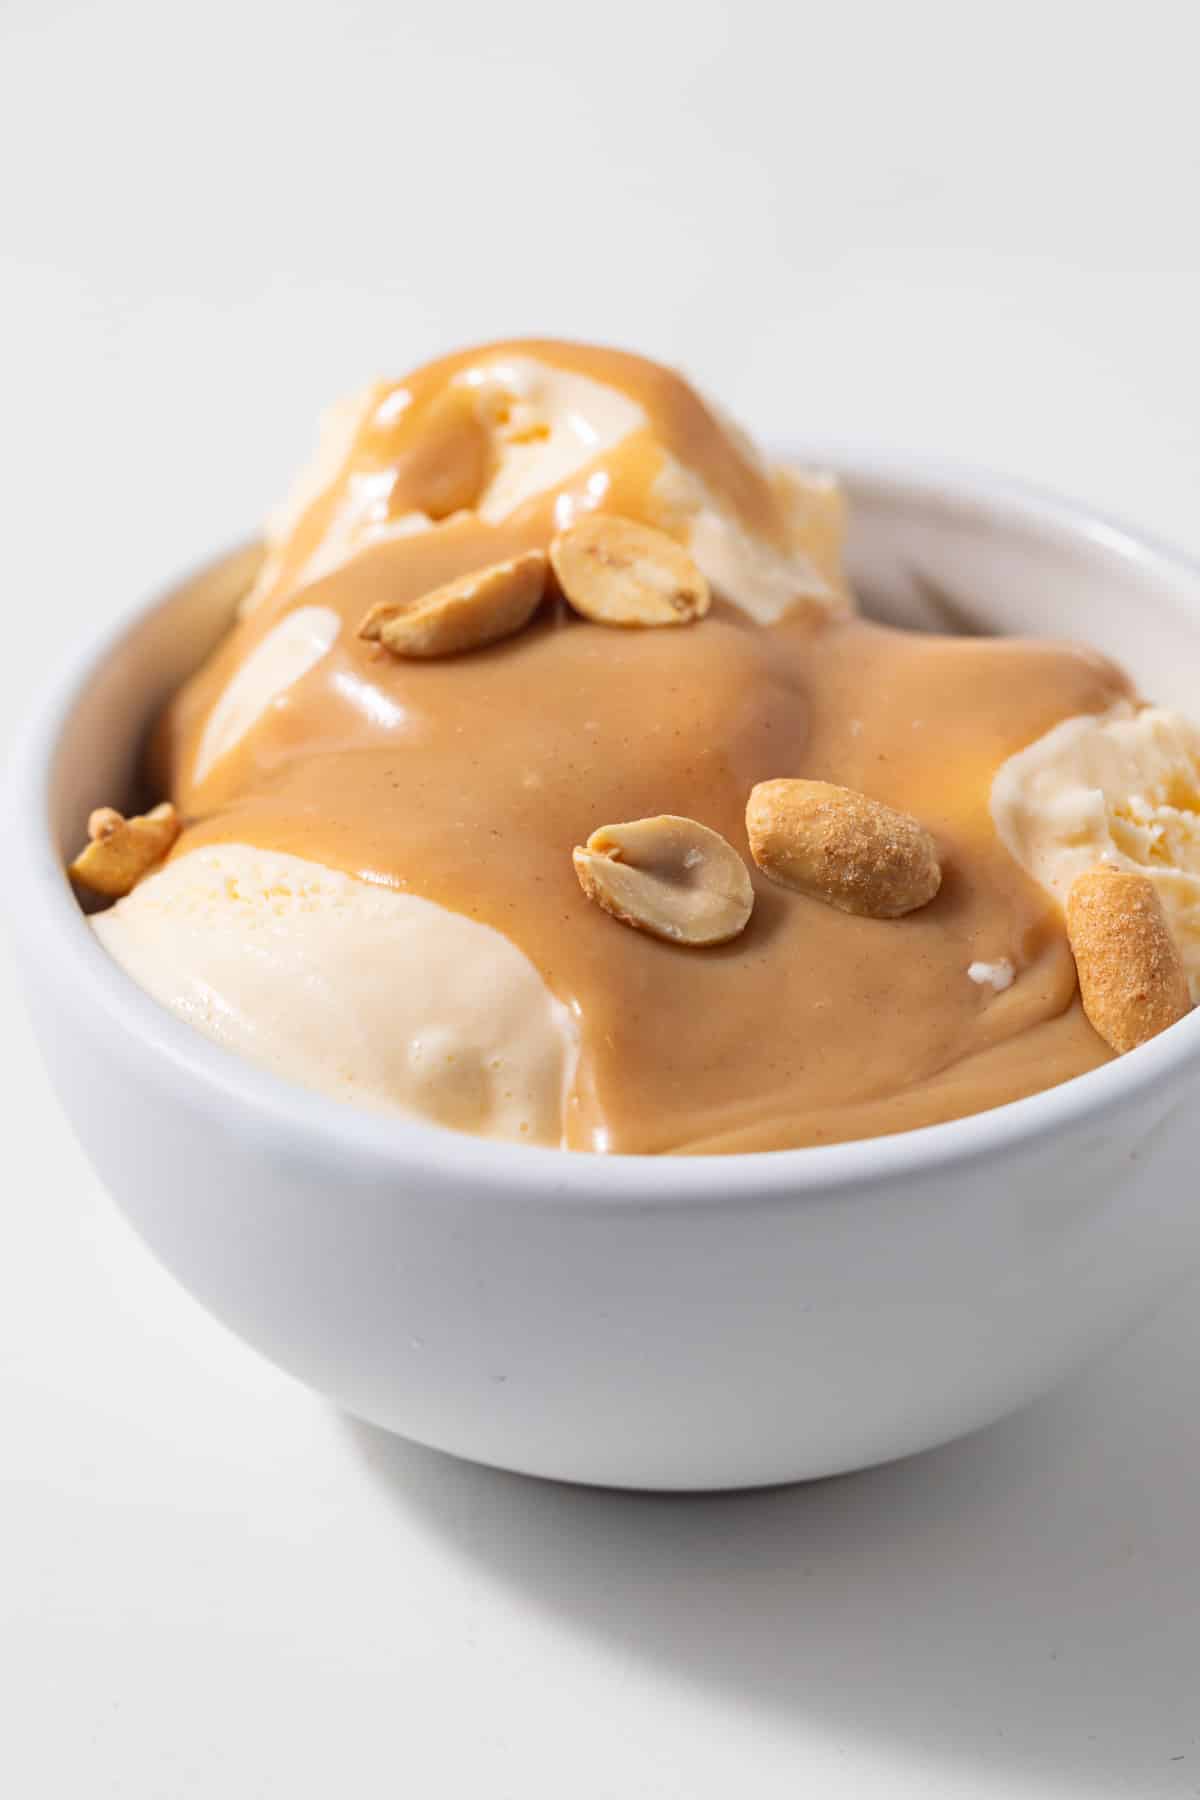 Peanut butter dessert sauce over ice cream.